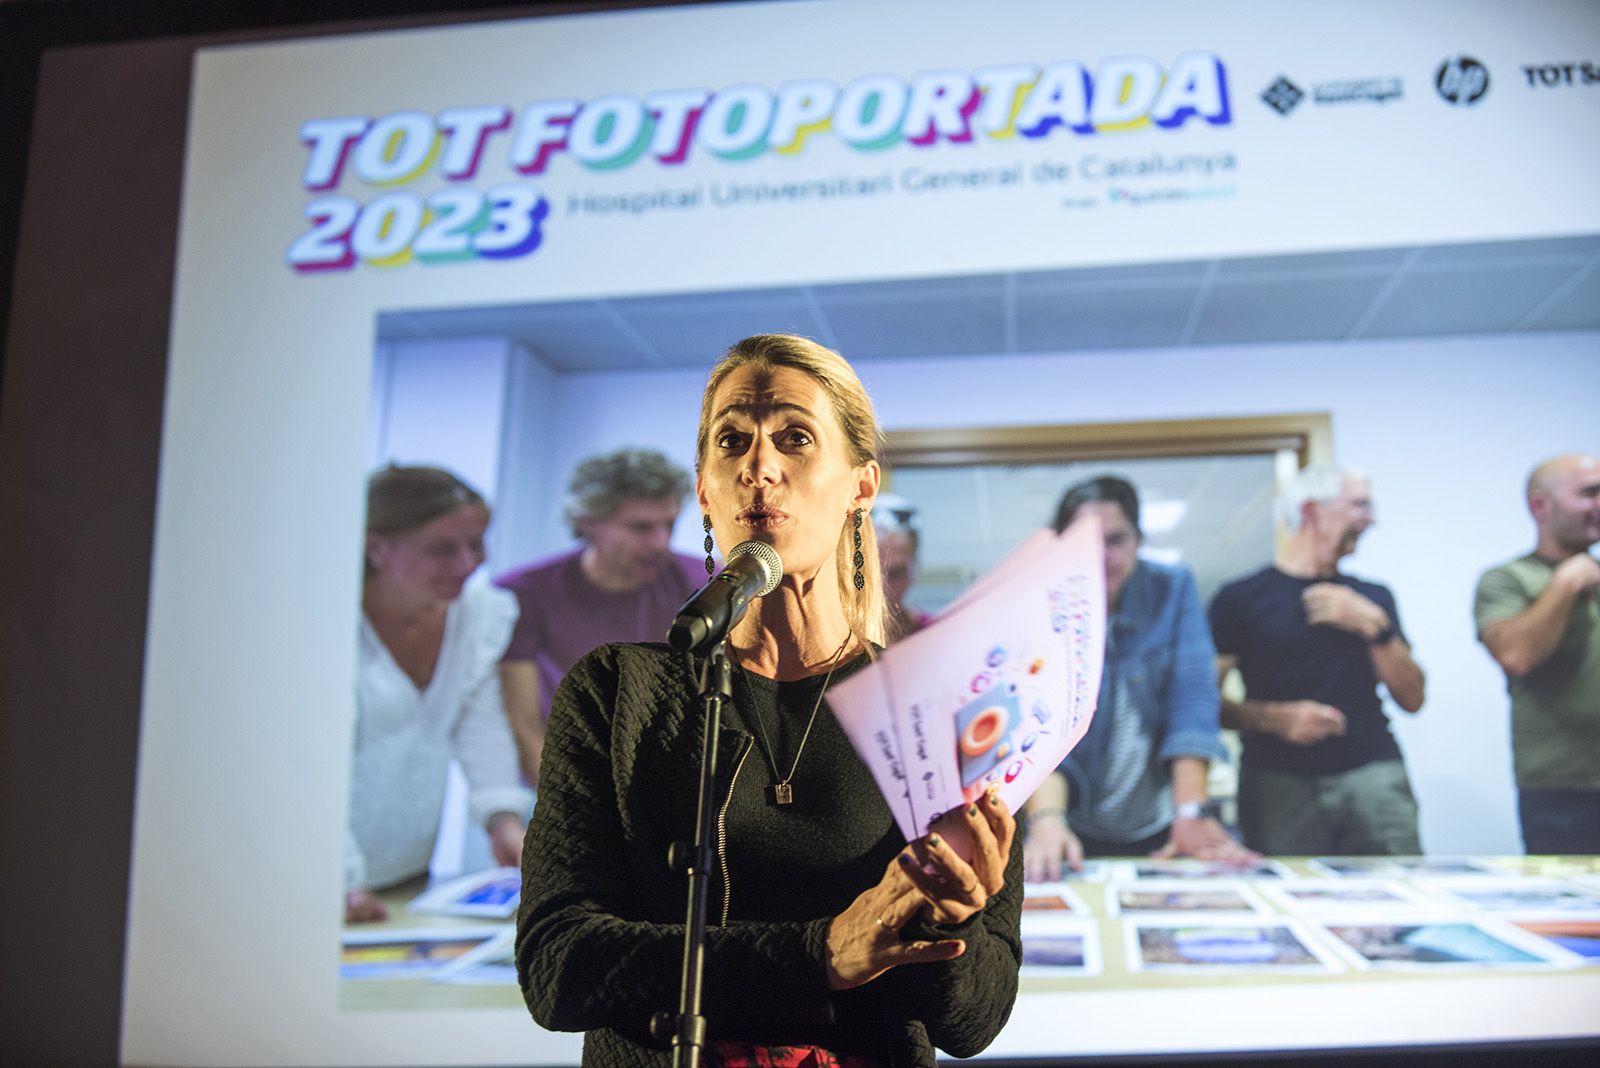 Laura Grau presentadora de l'acta de premis del Tot Fotoportada 2023. FOTO: Bernat Millet.